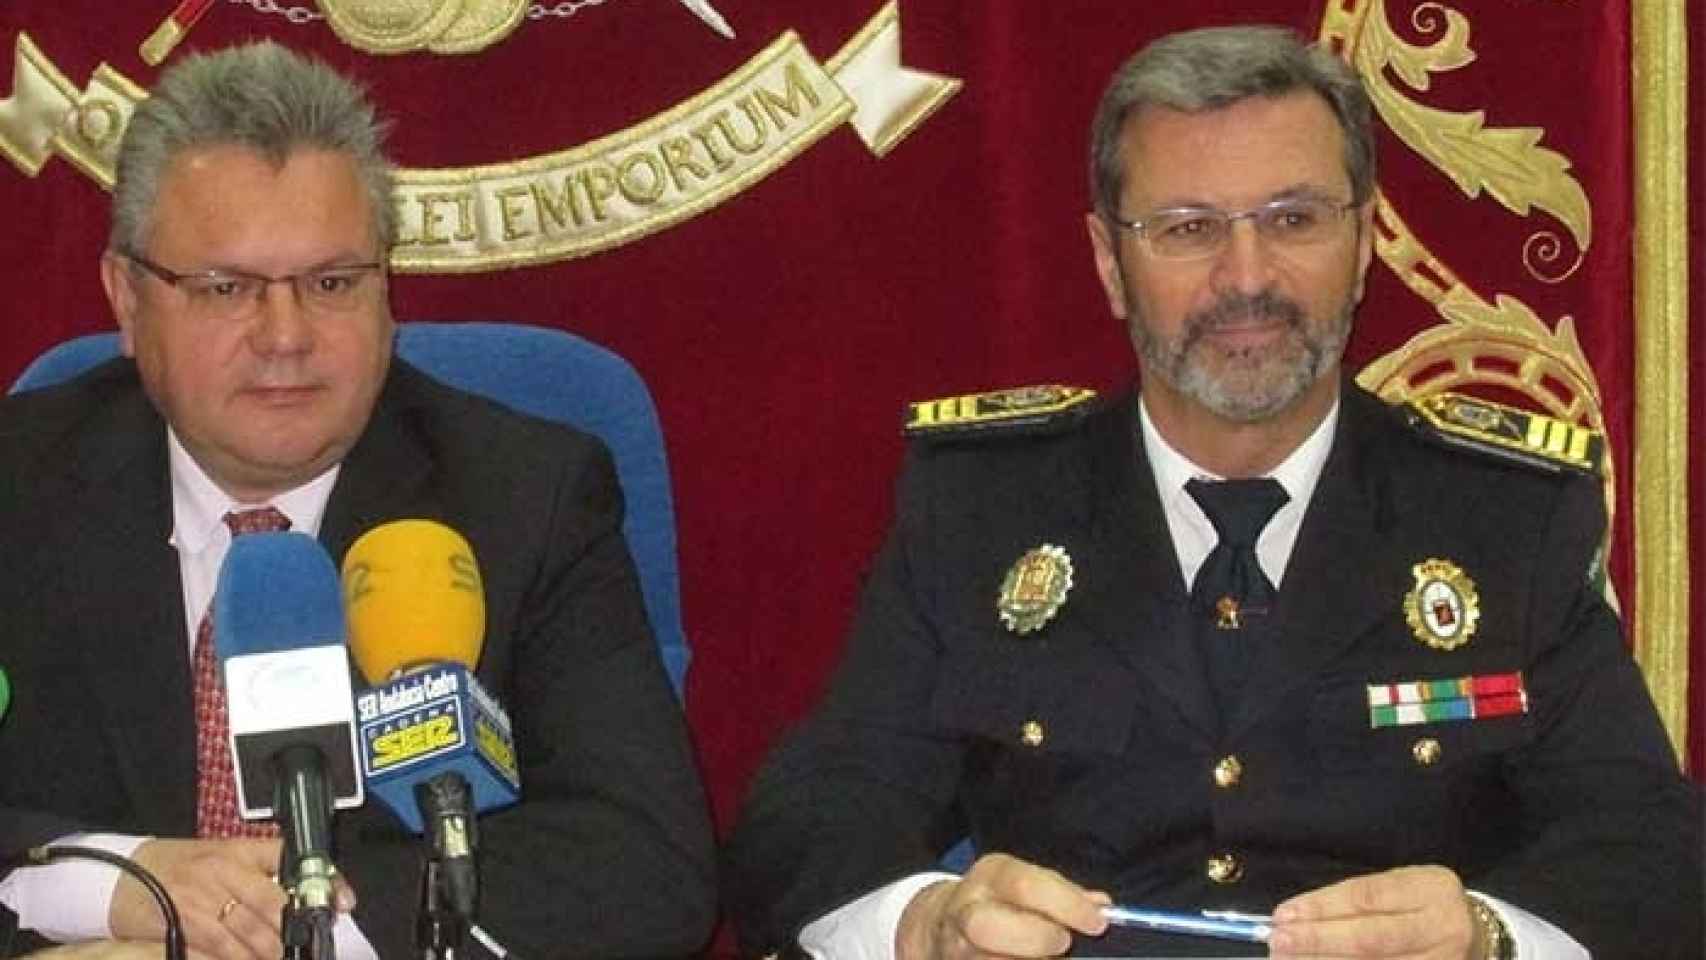 El alcalde de Puente Genil, el socialista Esteban Morales, junto al ex jefe de la Policía Local de la localidad cordobesa, Lorenzo Humánez.